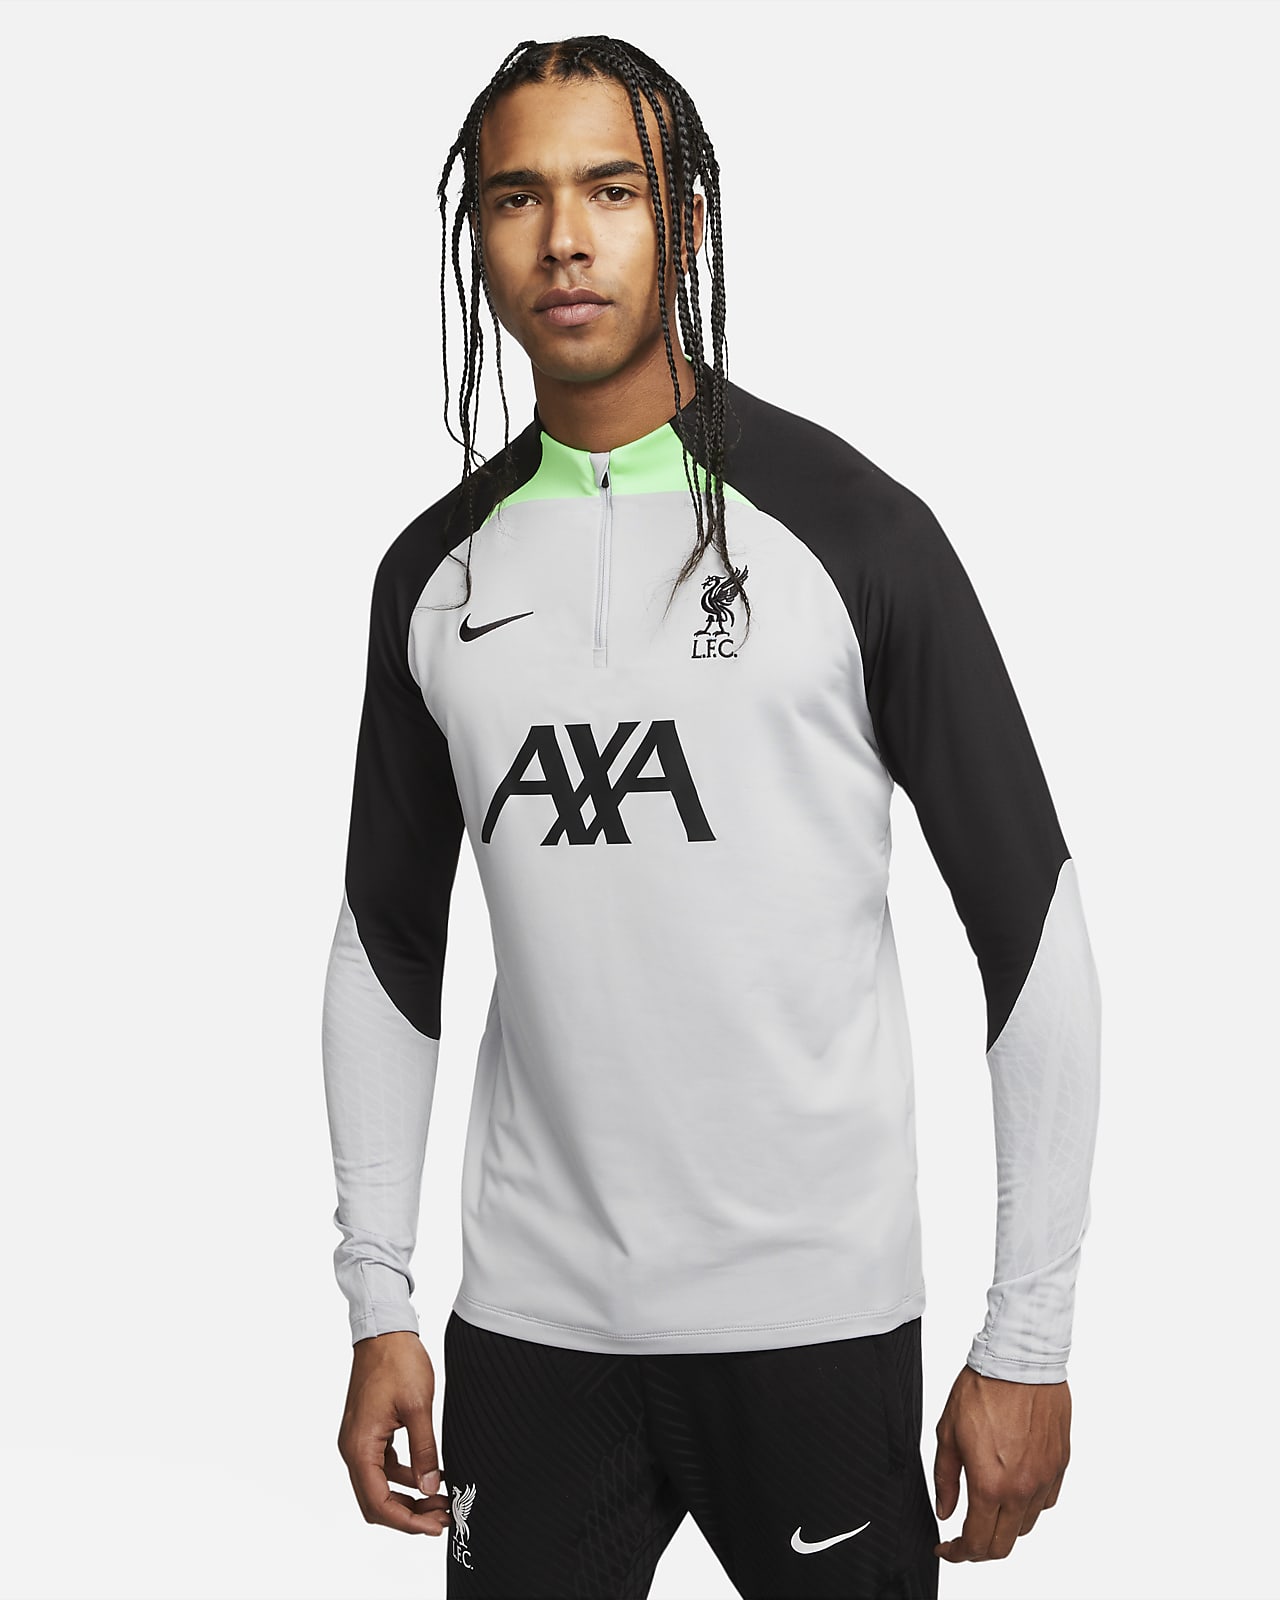 Ανδρική ποδοσφαιρική μπλούζα προπόνησης Nike Dri-FIT Λίβερπουλ Strike